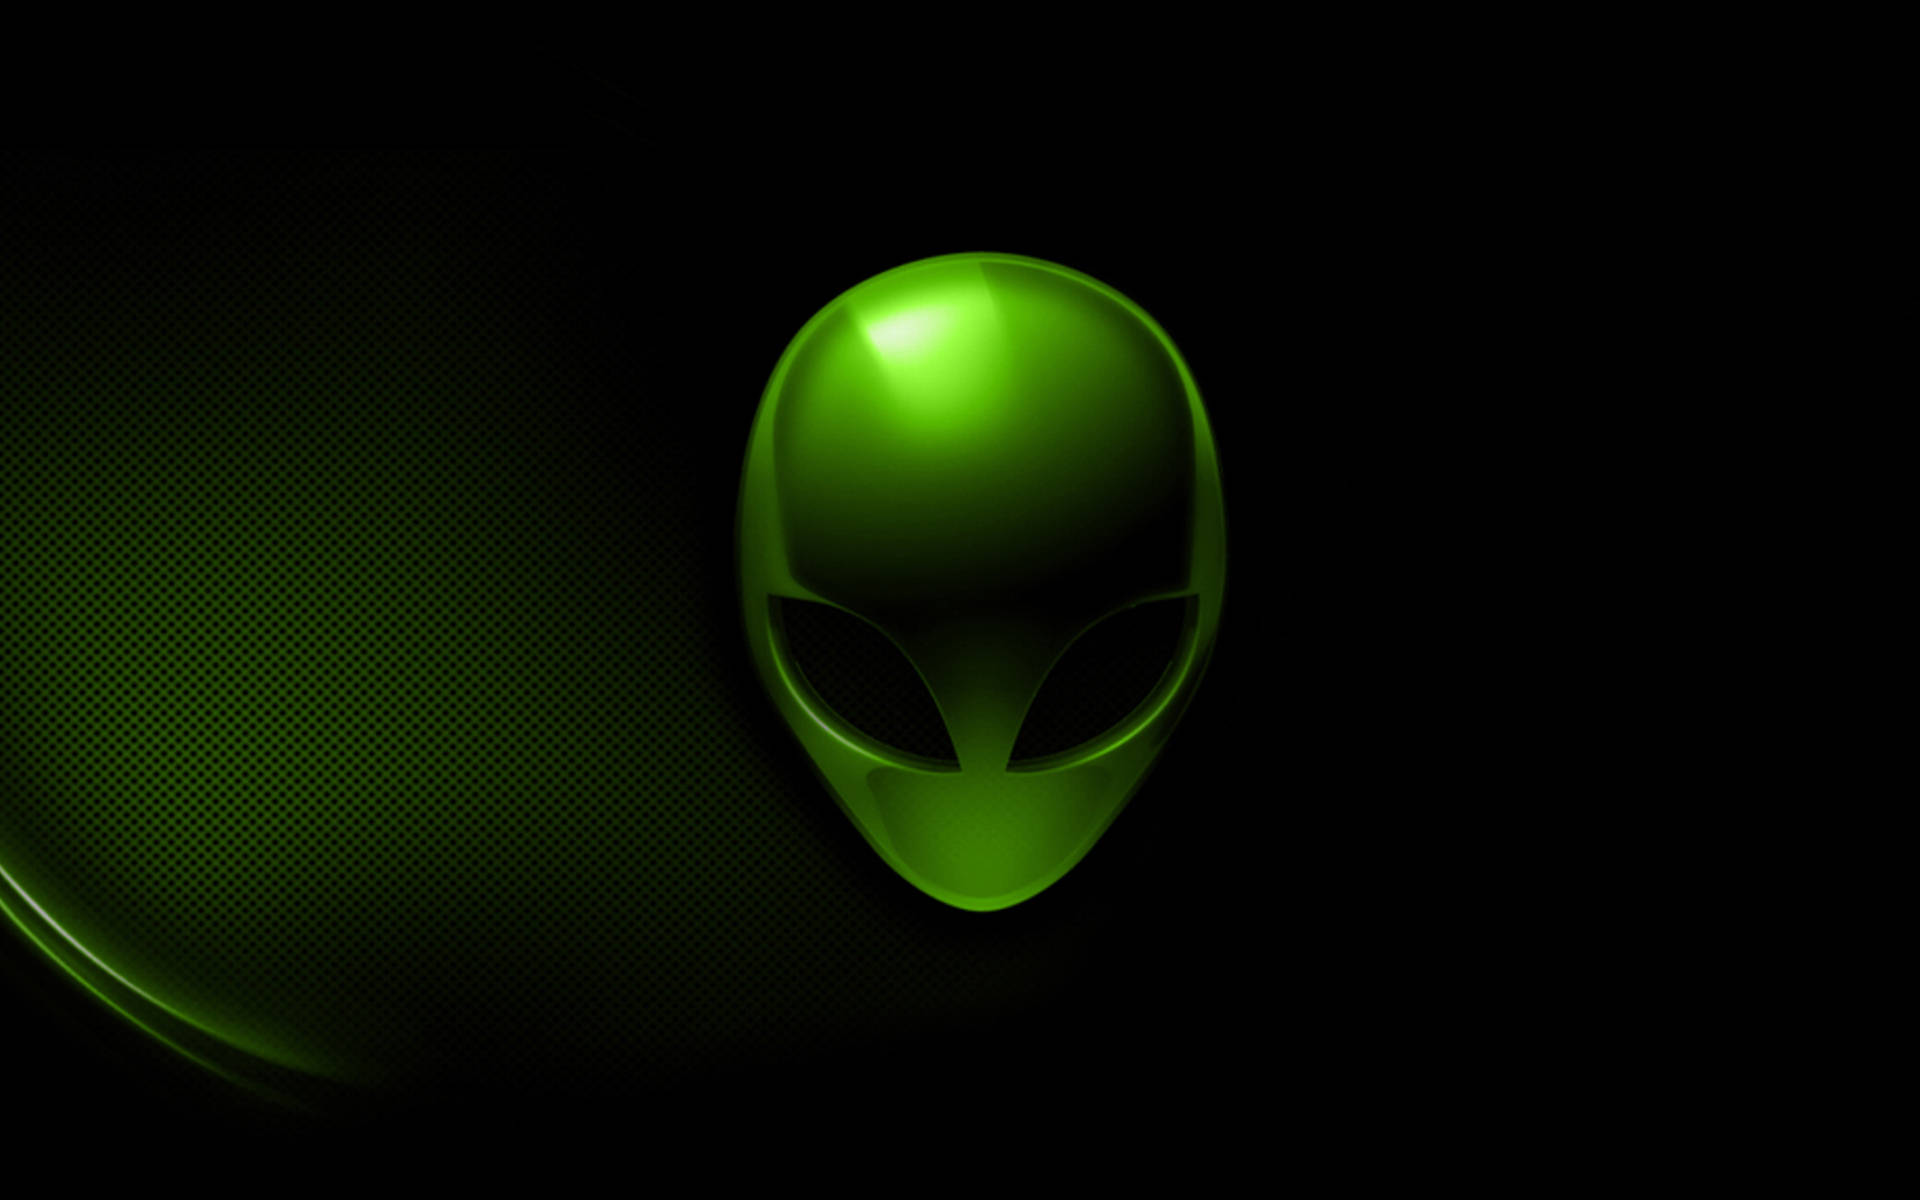 Alienware Default Green Logo Background